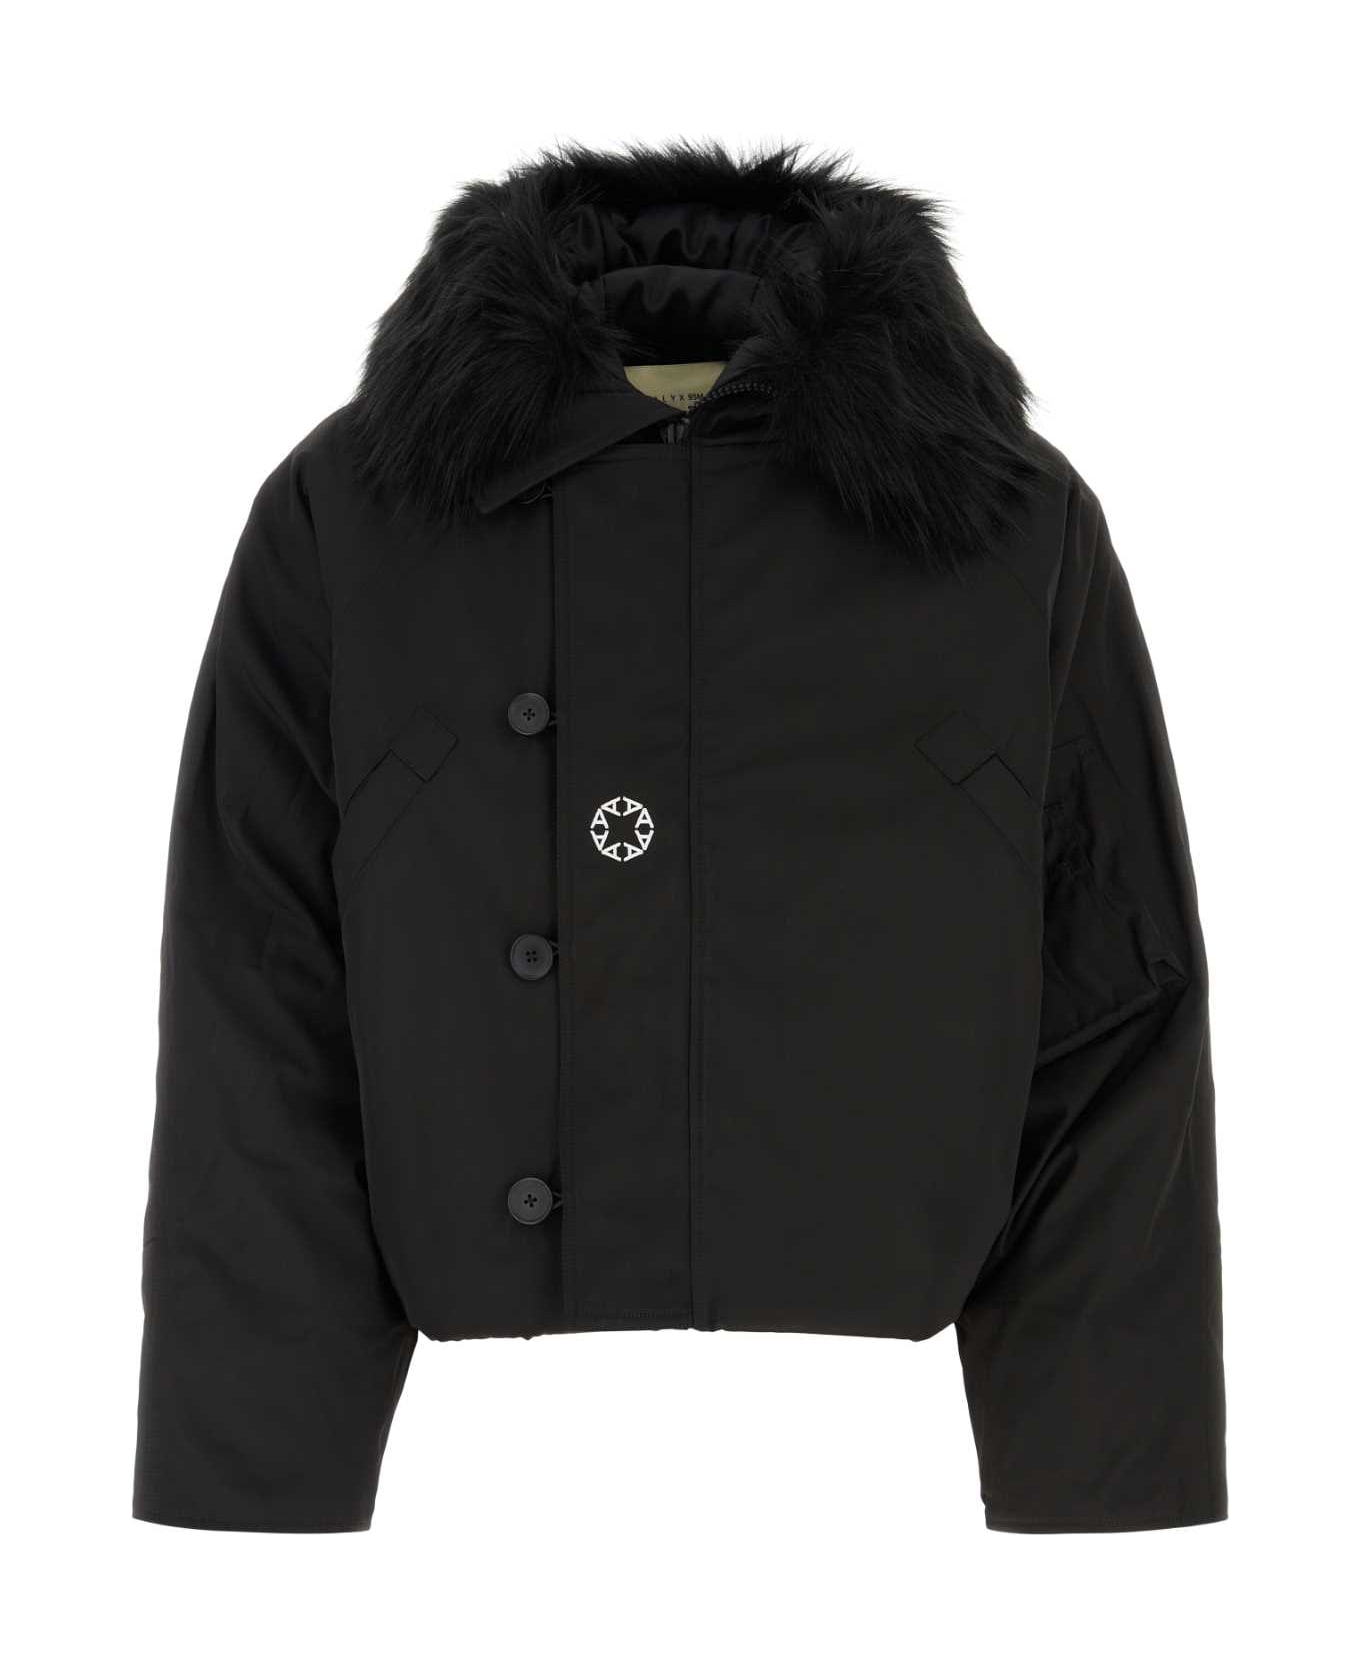 1017 ALYX 9SM Black Polyester Padded Jacket - BLACK ジャケット